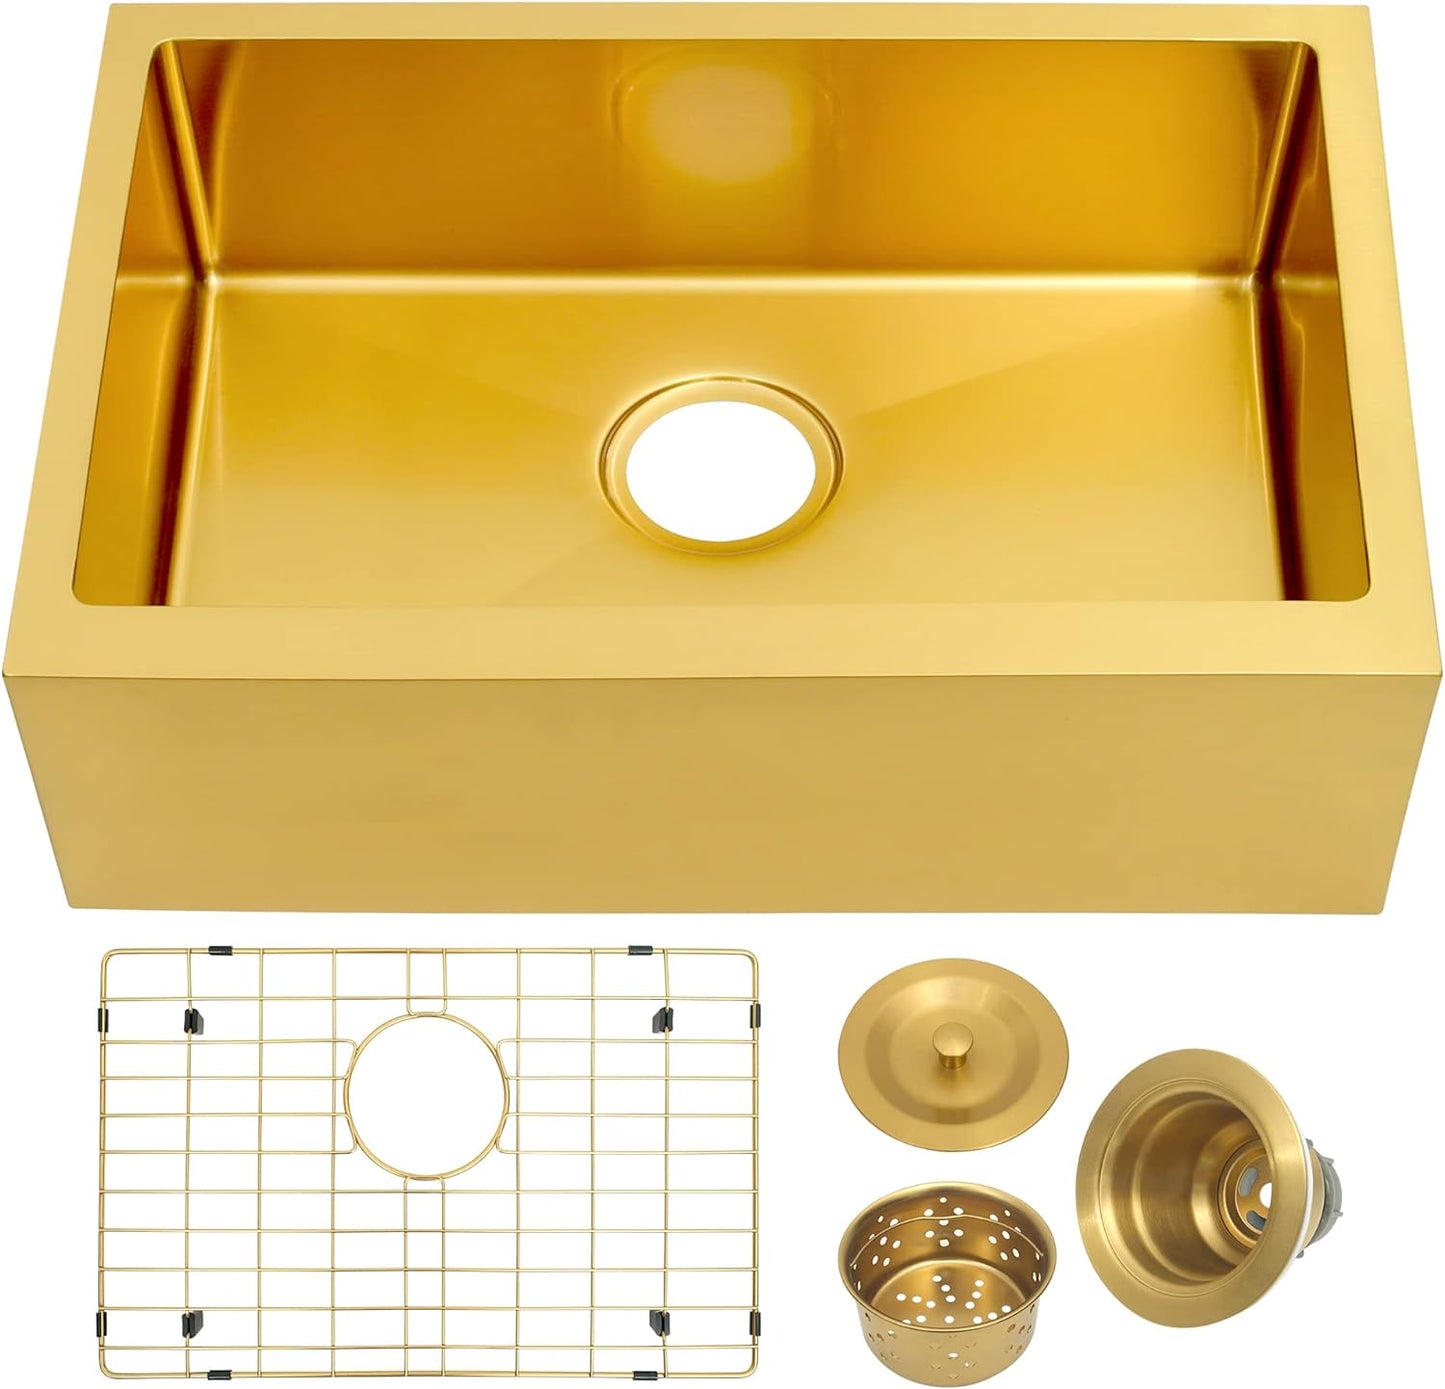 MILOSEN Undermount Gold RV Kitchen Sink, Stainless Steel Farmhouse Apronfront Kitchen Sink, Small Single bowl Apron Sink, 2316 inch Kitchen RV Sink, 7 inch Depth Kitchen RV Sinks (Gold, Farmhouse)